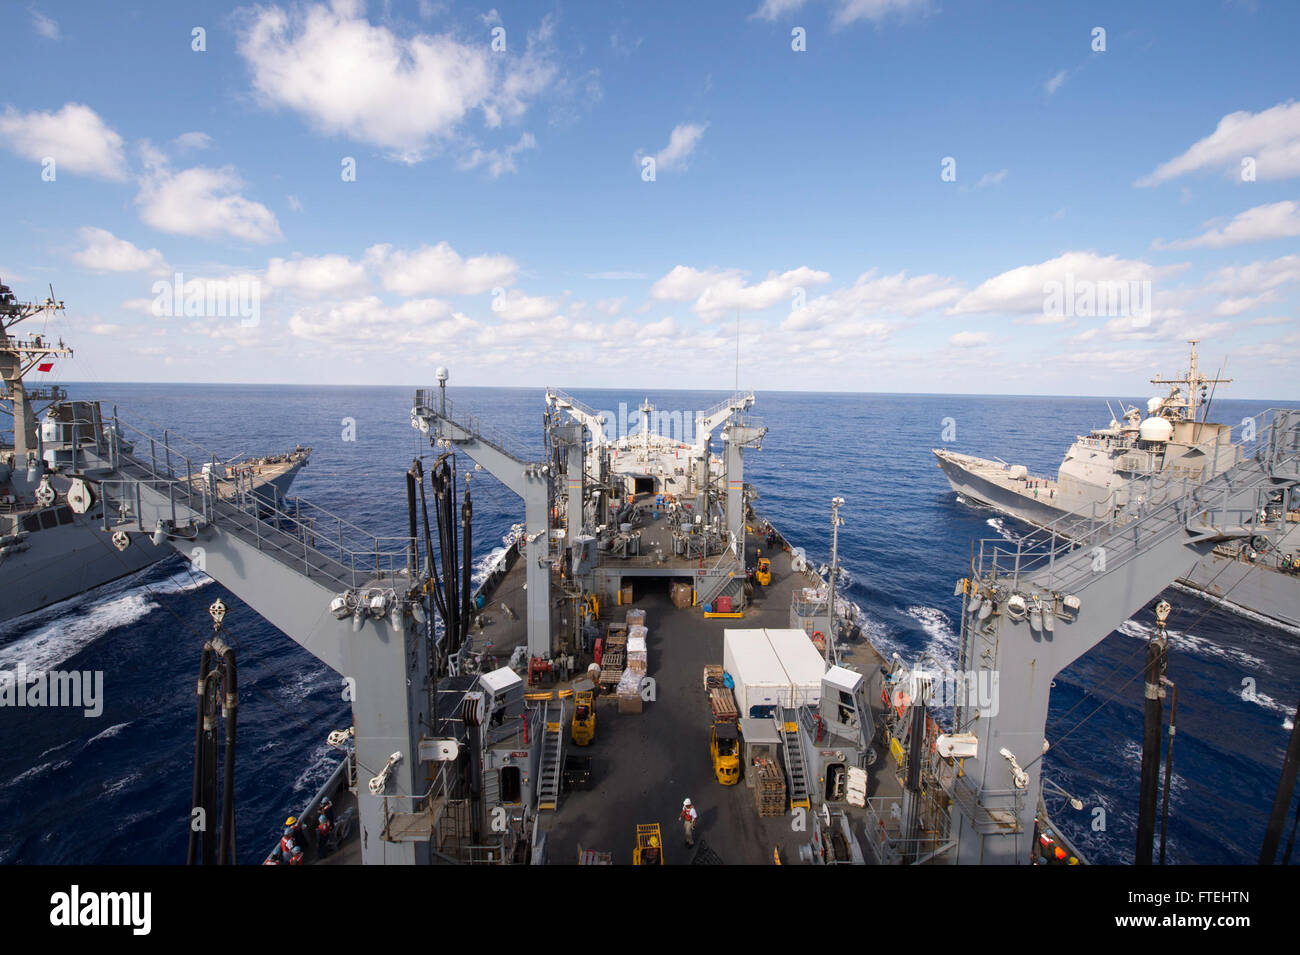 Mare Mediterraneo (ott. 28, 2014) - Il Arleigh Burke-class destroyer USS Truxtun (DDG 103), a sinistra e il Ticonderoga-class missile cruiser Mare delle Filippine (CG 58), a destra il premistoppa della flotta oliatore di rifornimento USNS Leroy Grumman (T-AO 195) durante un rifornimento in corso in mare. Grumman, i militari Sealift Command Mare Mediterraneo dovere oliatore, è distribuita negli Stati Uniti Sesta flotta area di operazioni a sostegno degli interessi di sicurezza nazionali in Europa e in Africa. Foto Stock